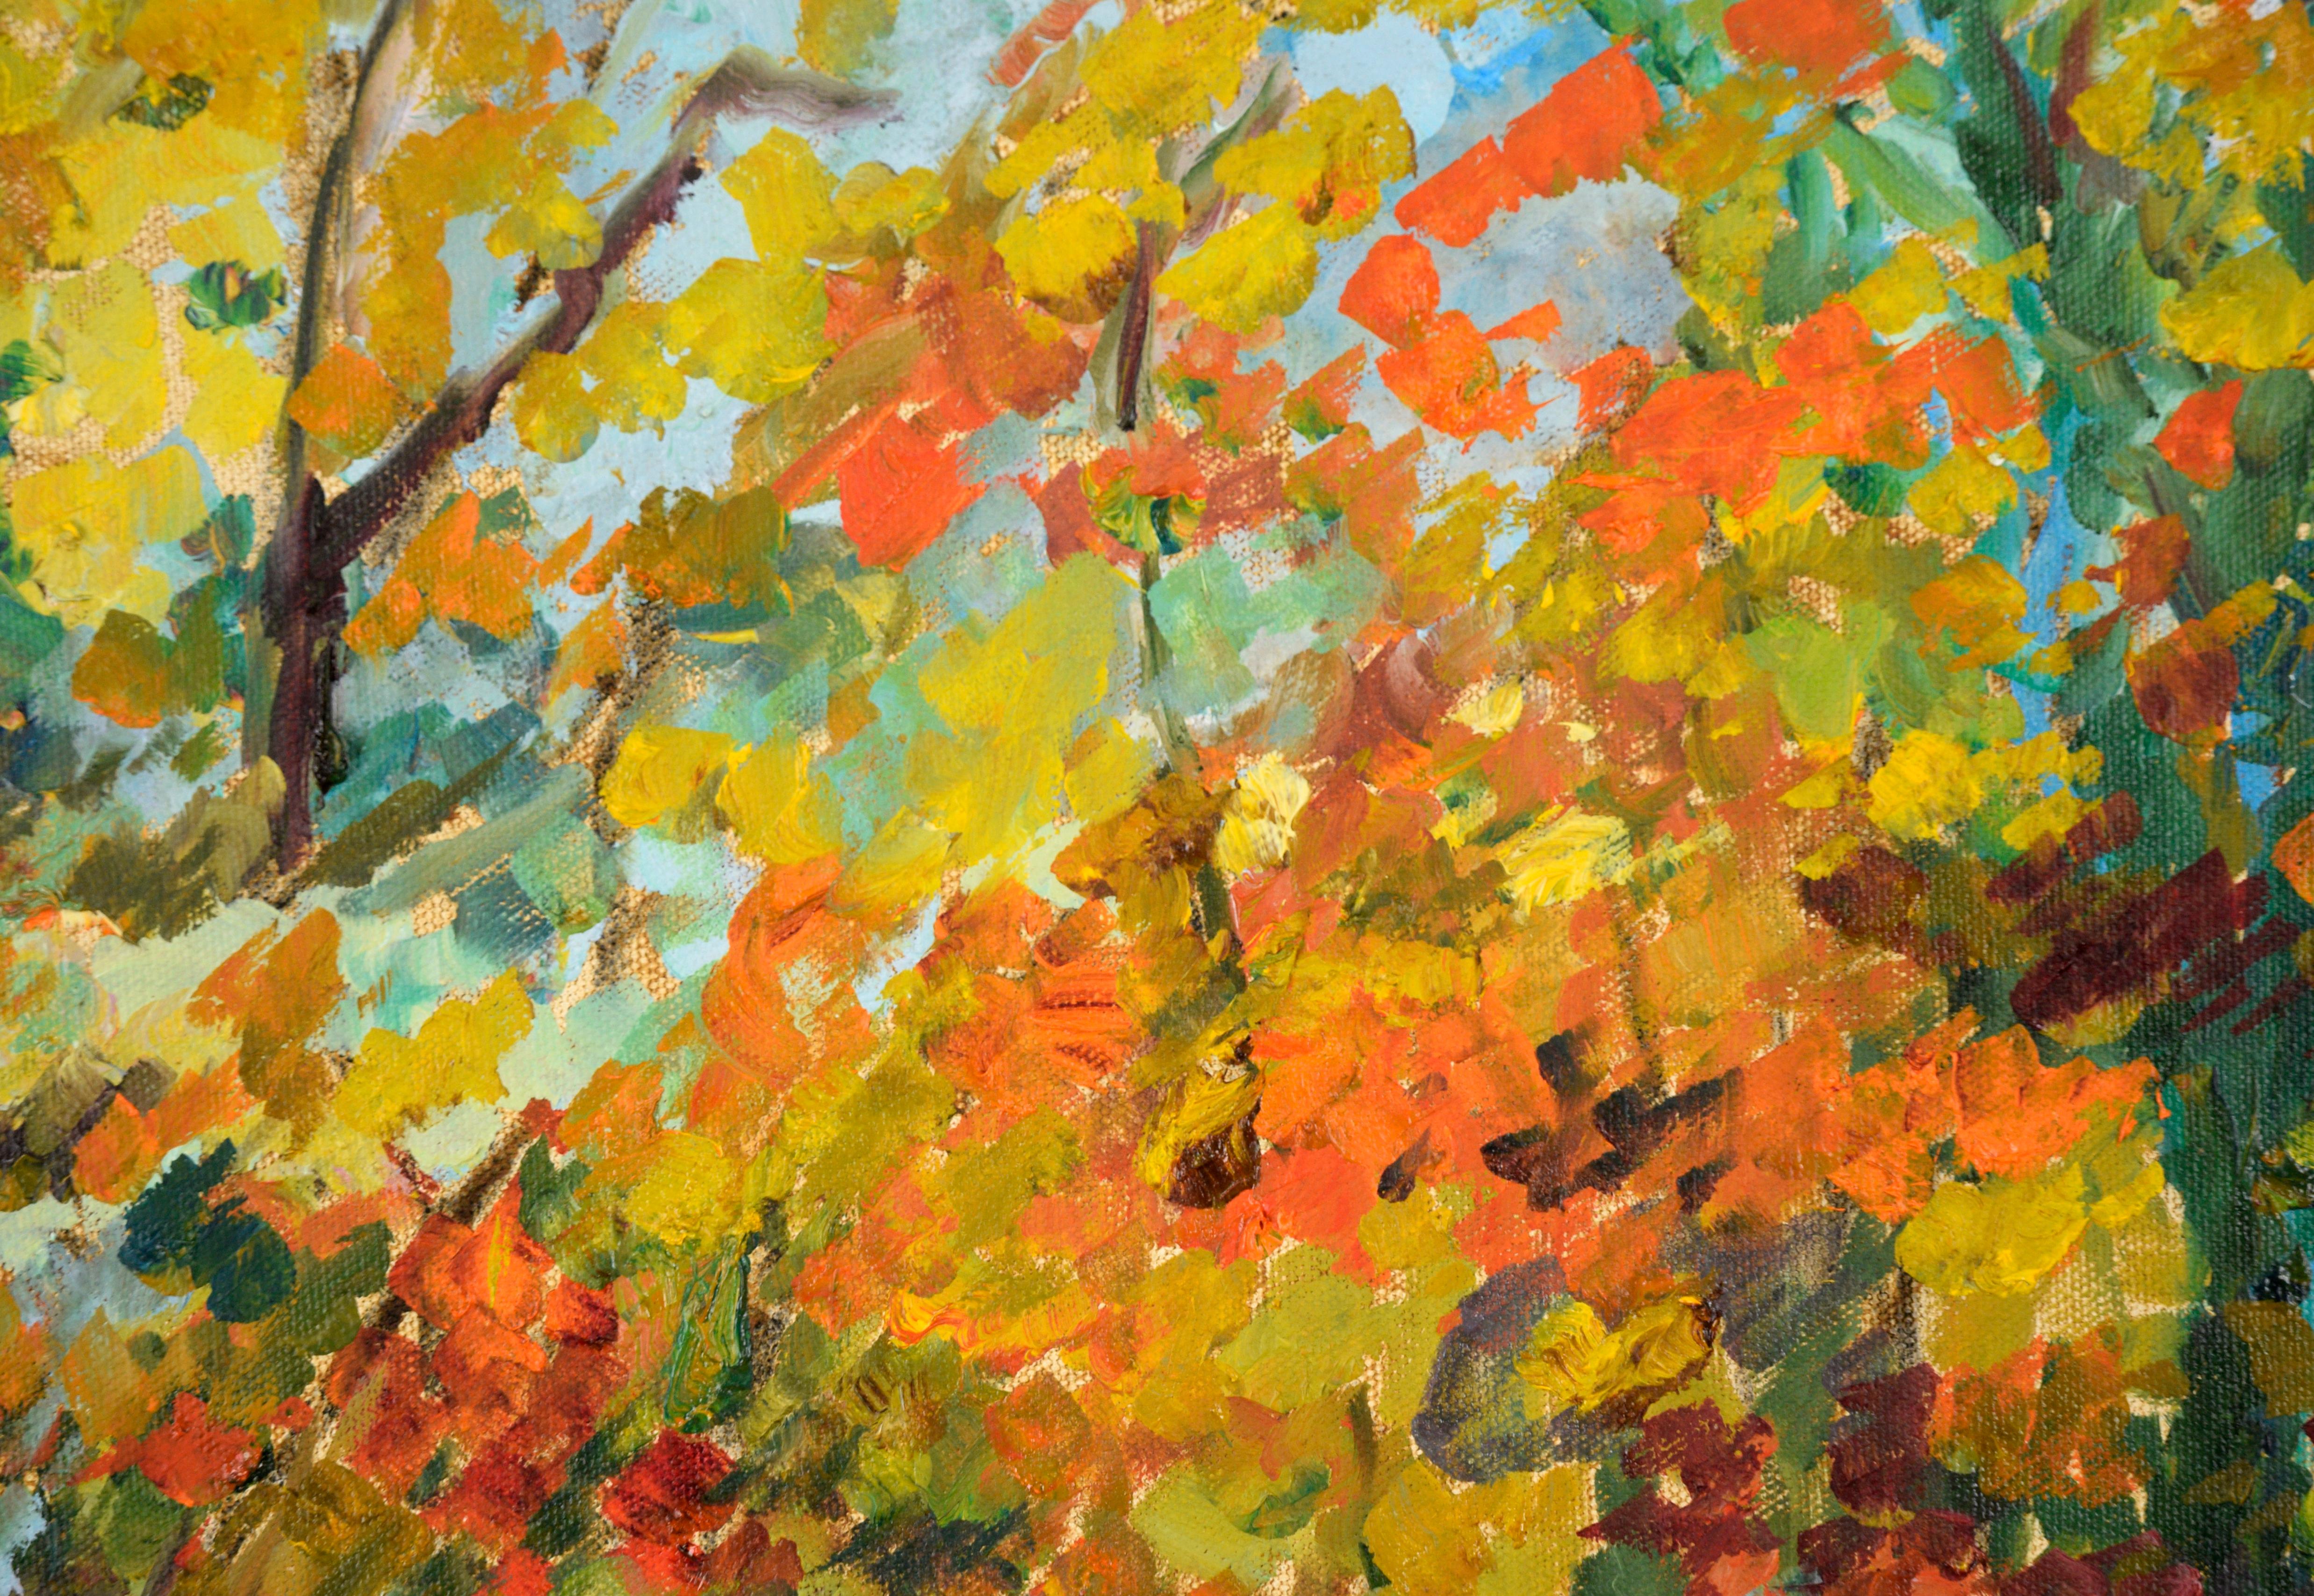 Stream in the Forest in Autumn - Paysage en acrylique sur toile - Marron Landscape Painting par Unknown